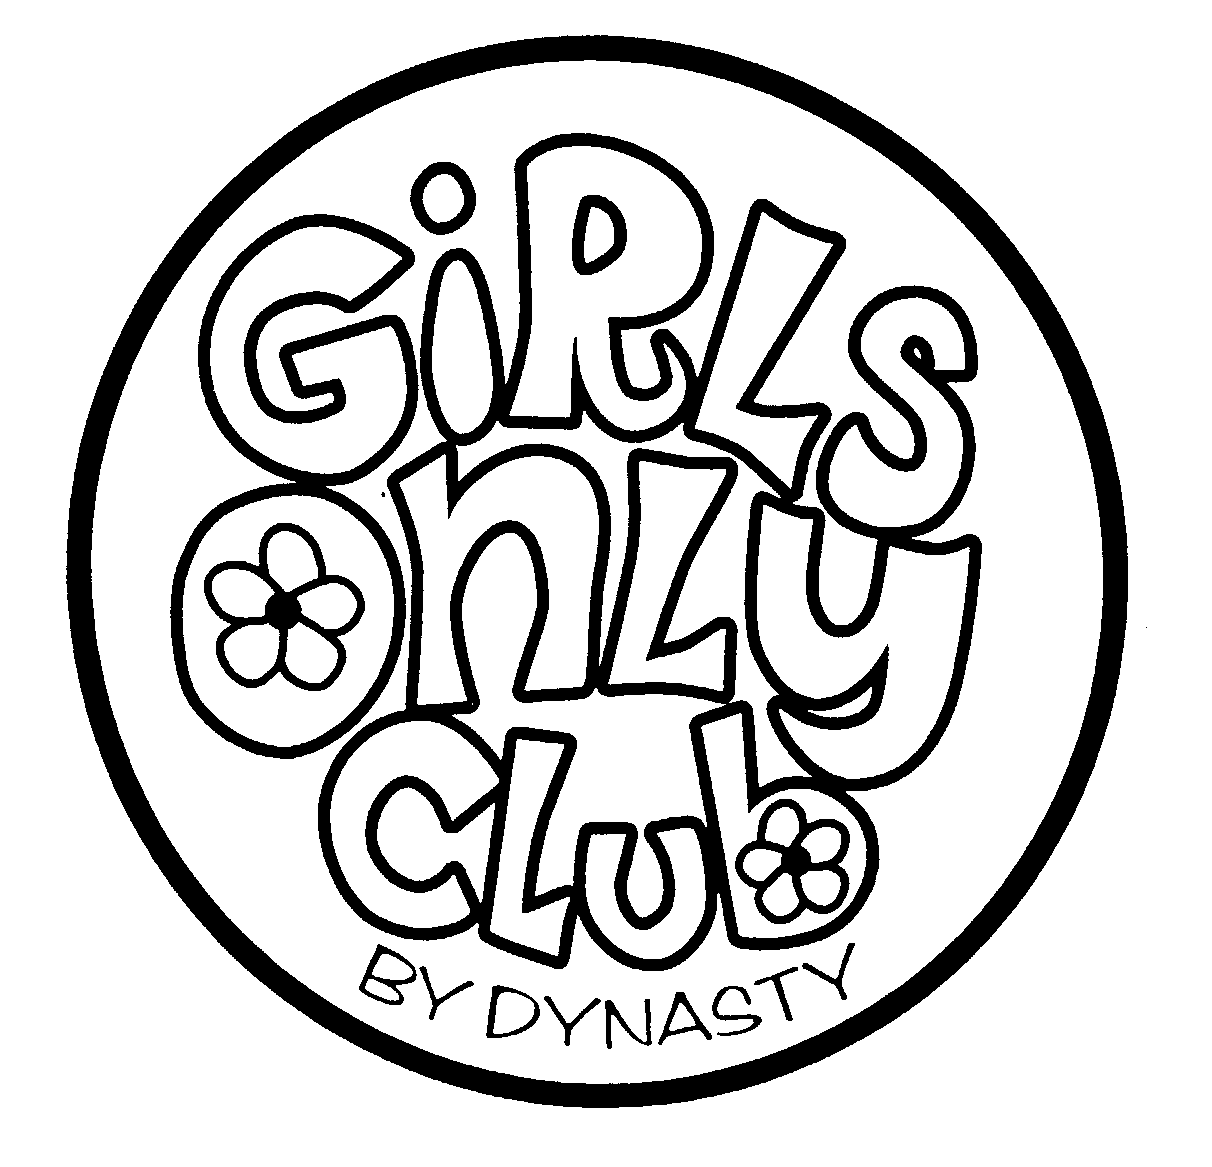  GIRLS ONLY CLUB BY DYNASTY